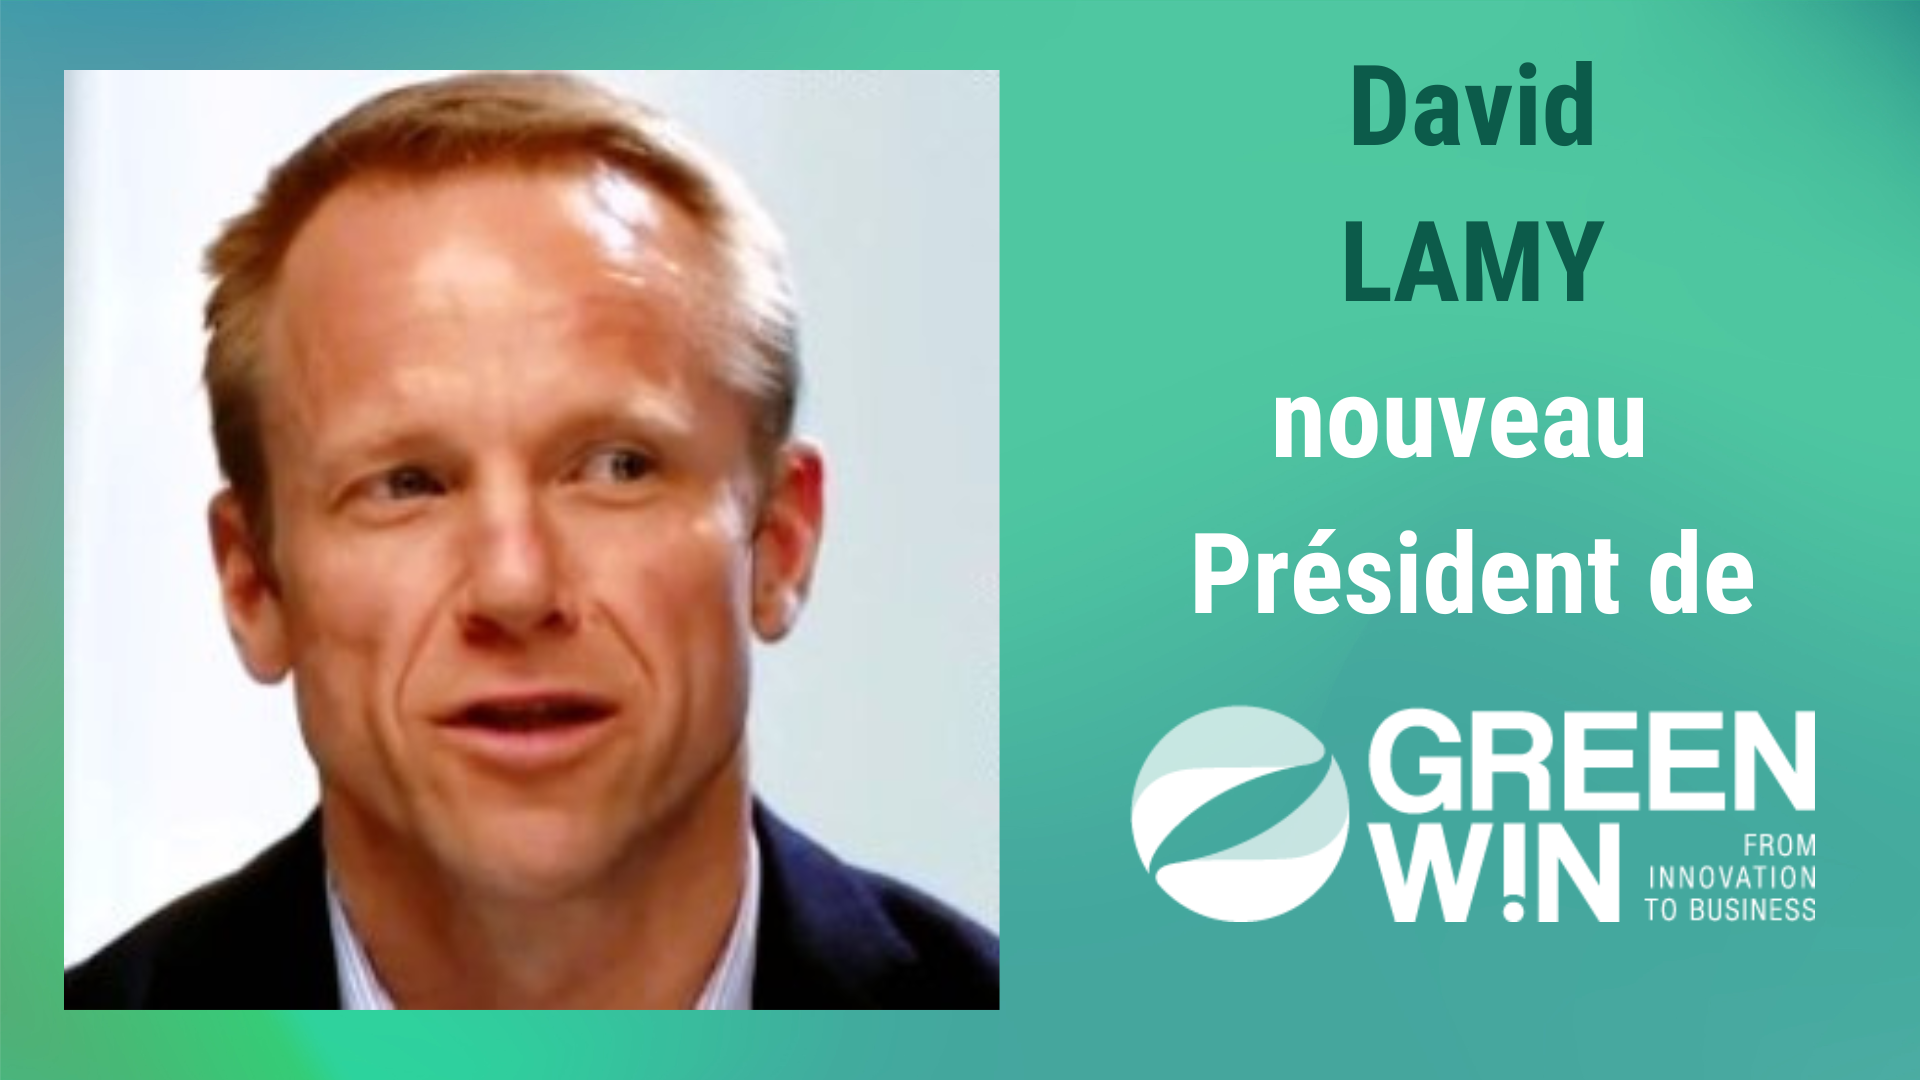 David LAMY, Directeur général de Tradecowall, est élu Président du pôle GreenWin